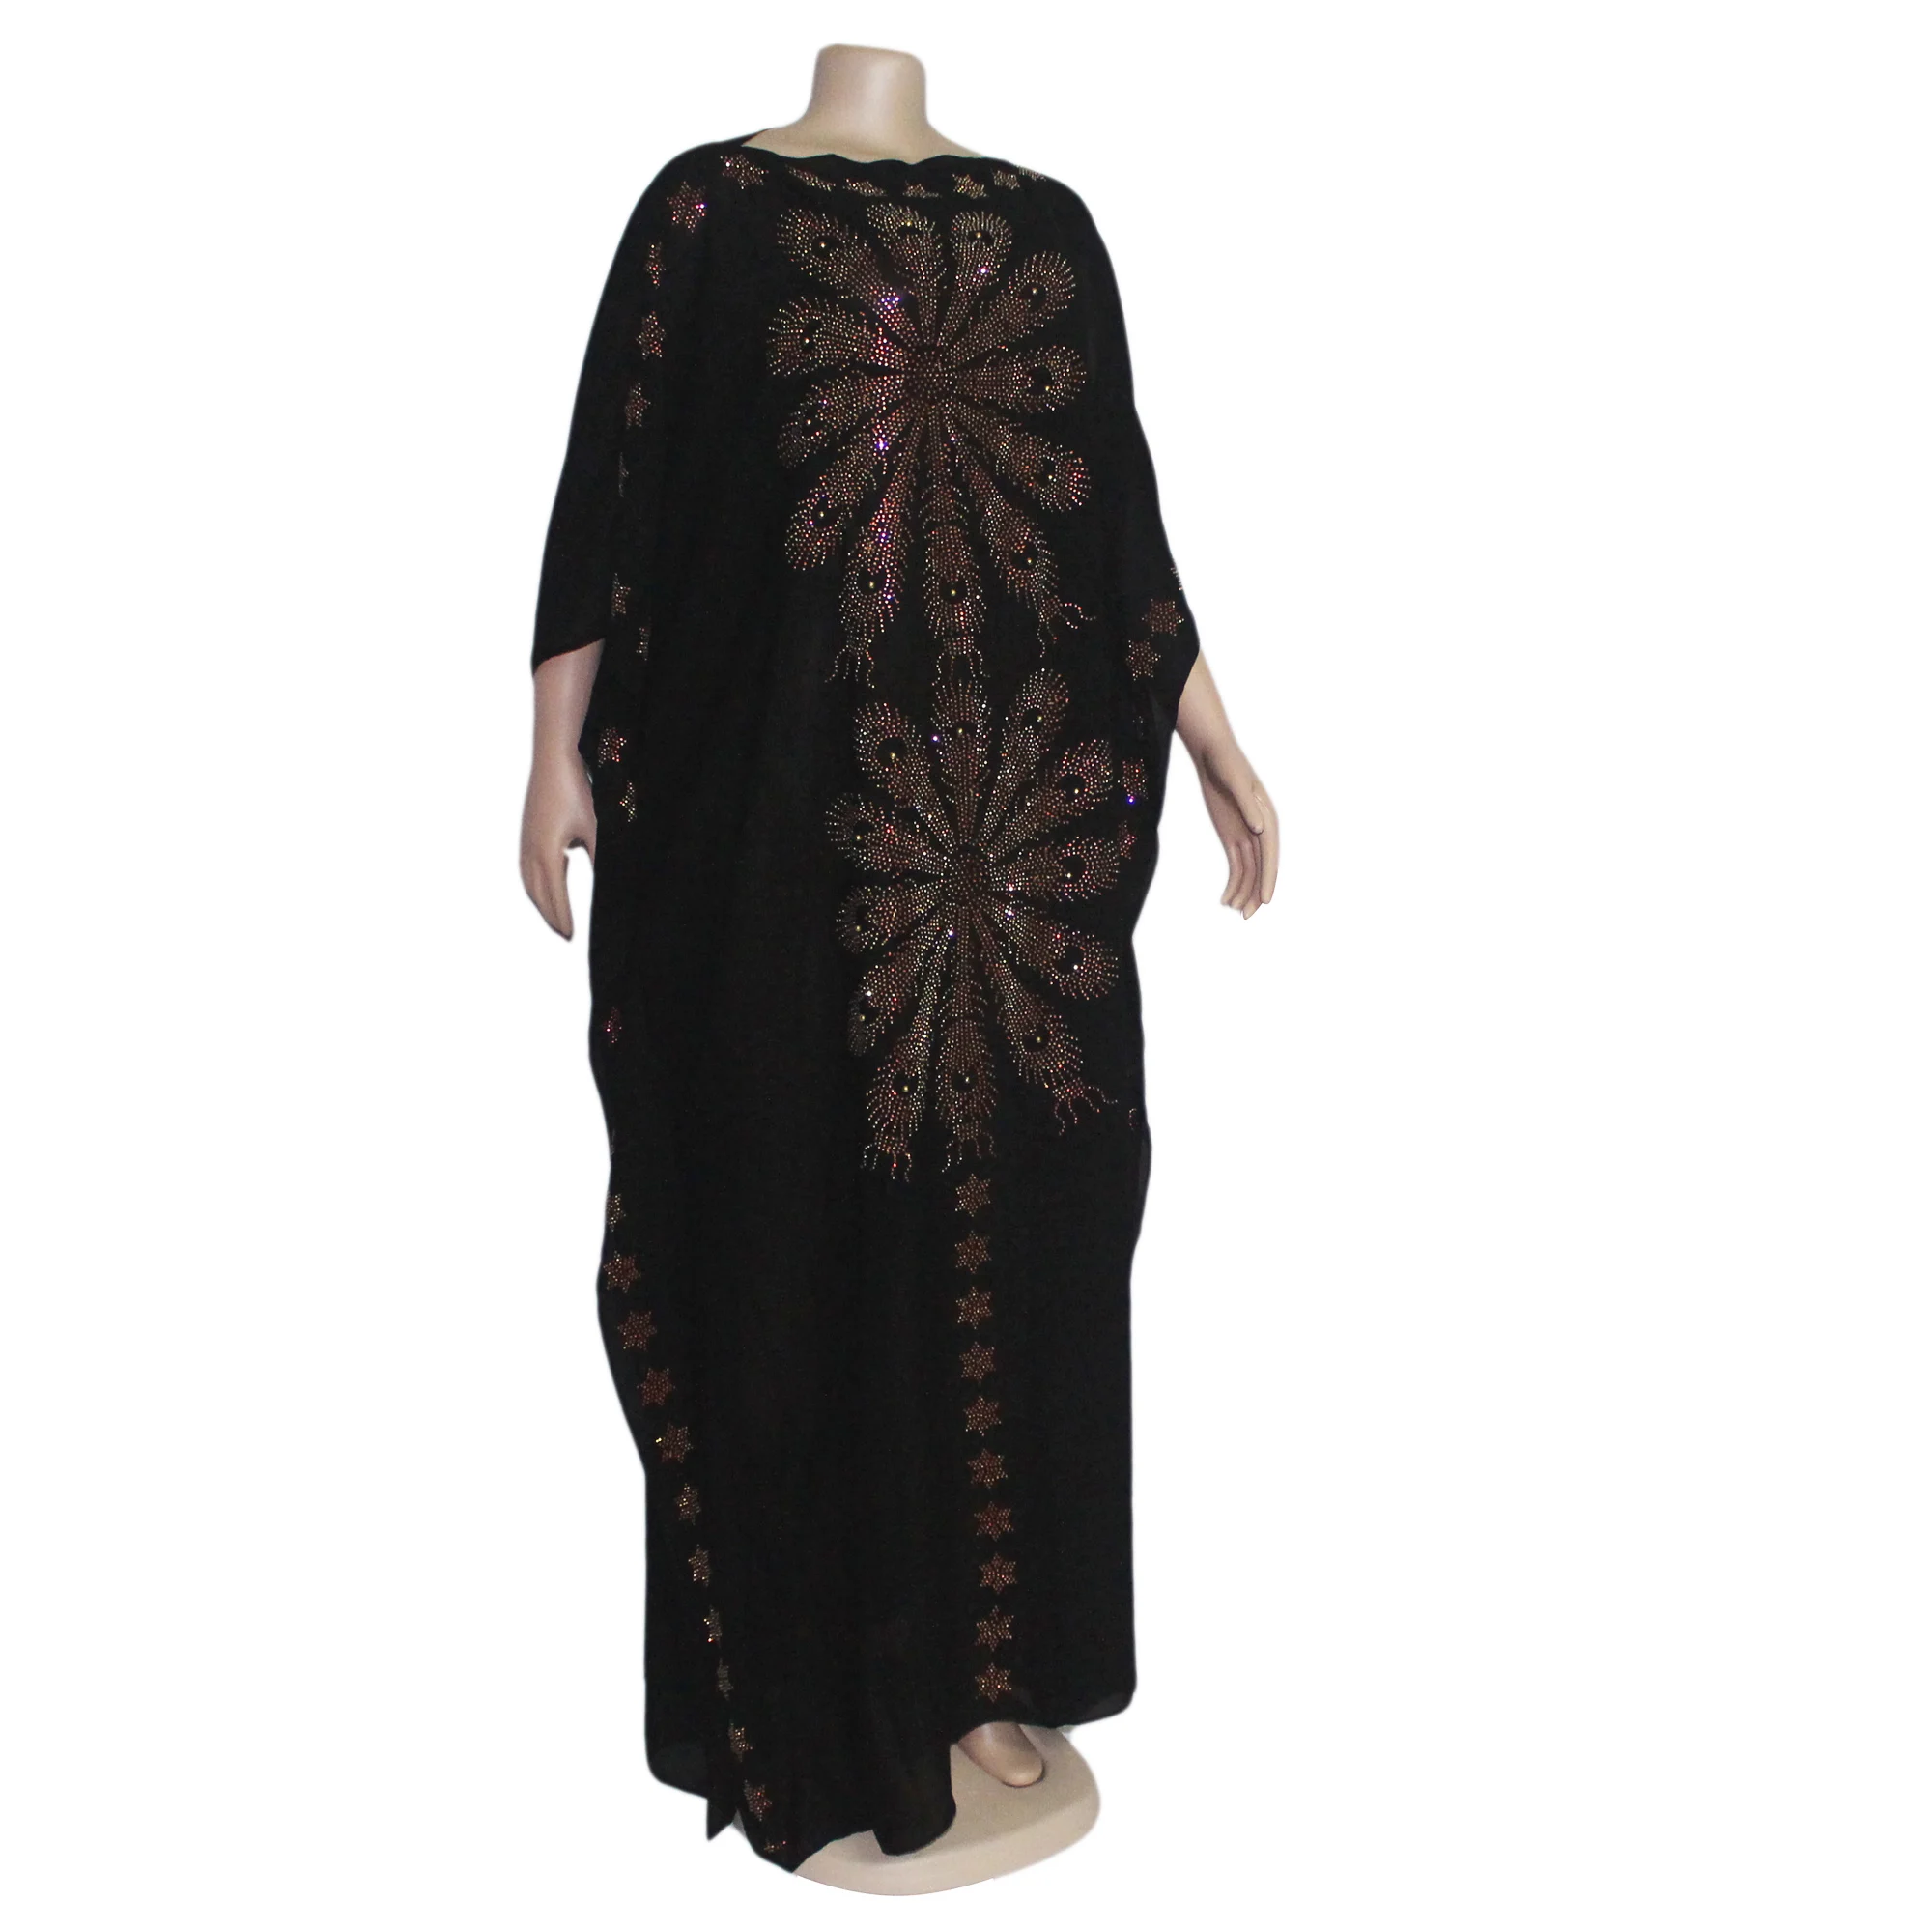 Tilapia/летнее платье большого размера с вырезом лодочкой, Длинное свободное платье Дашики